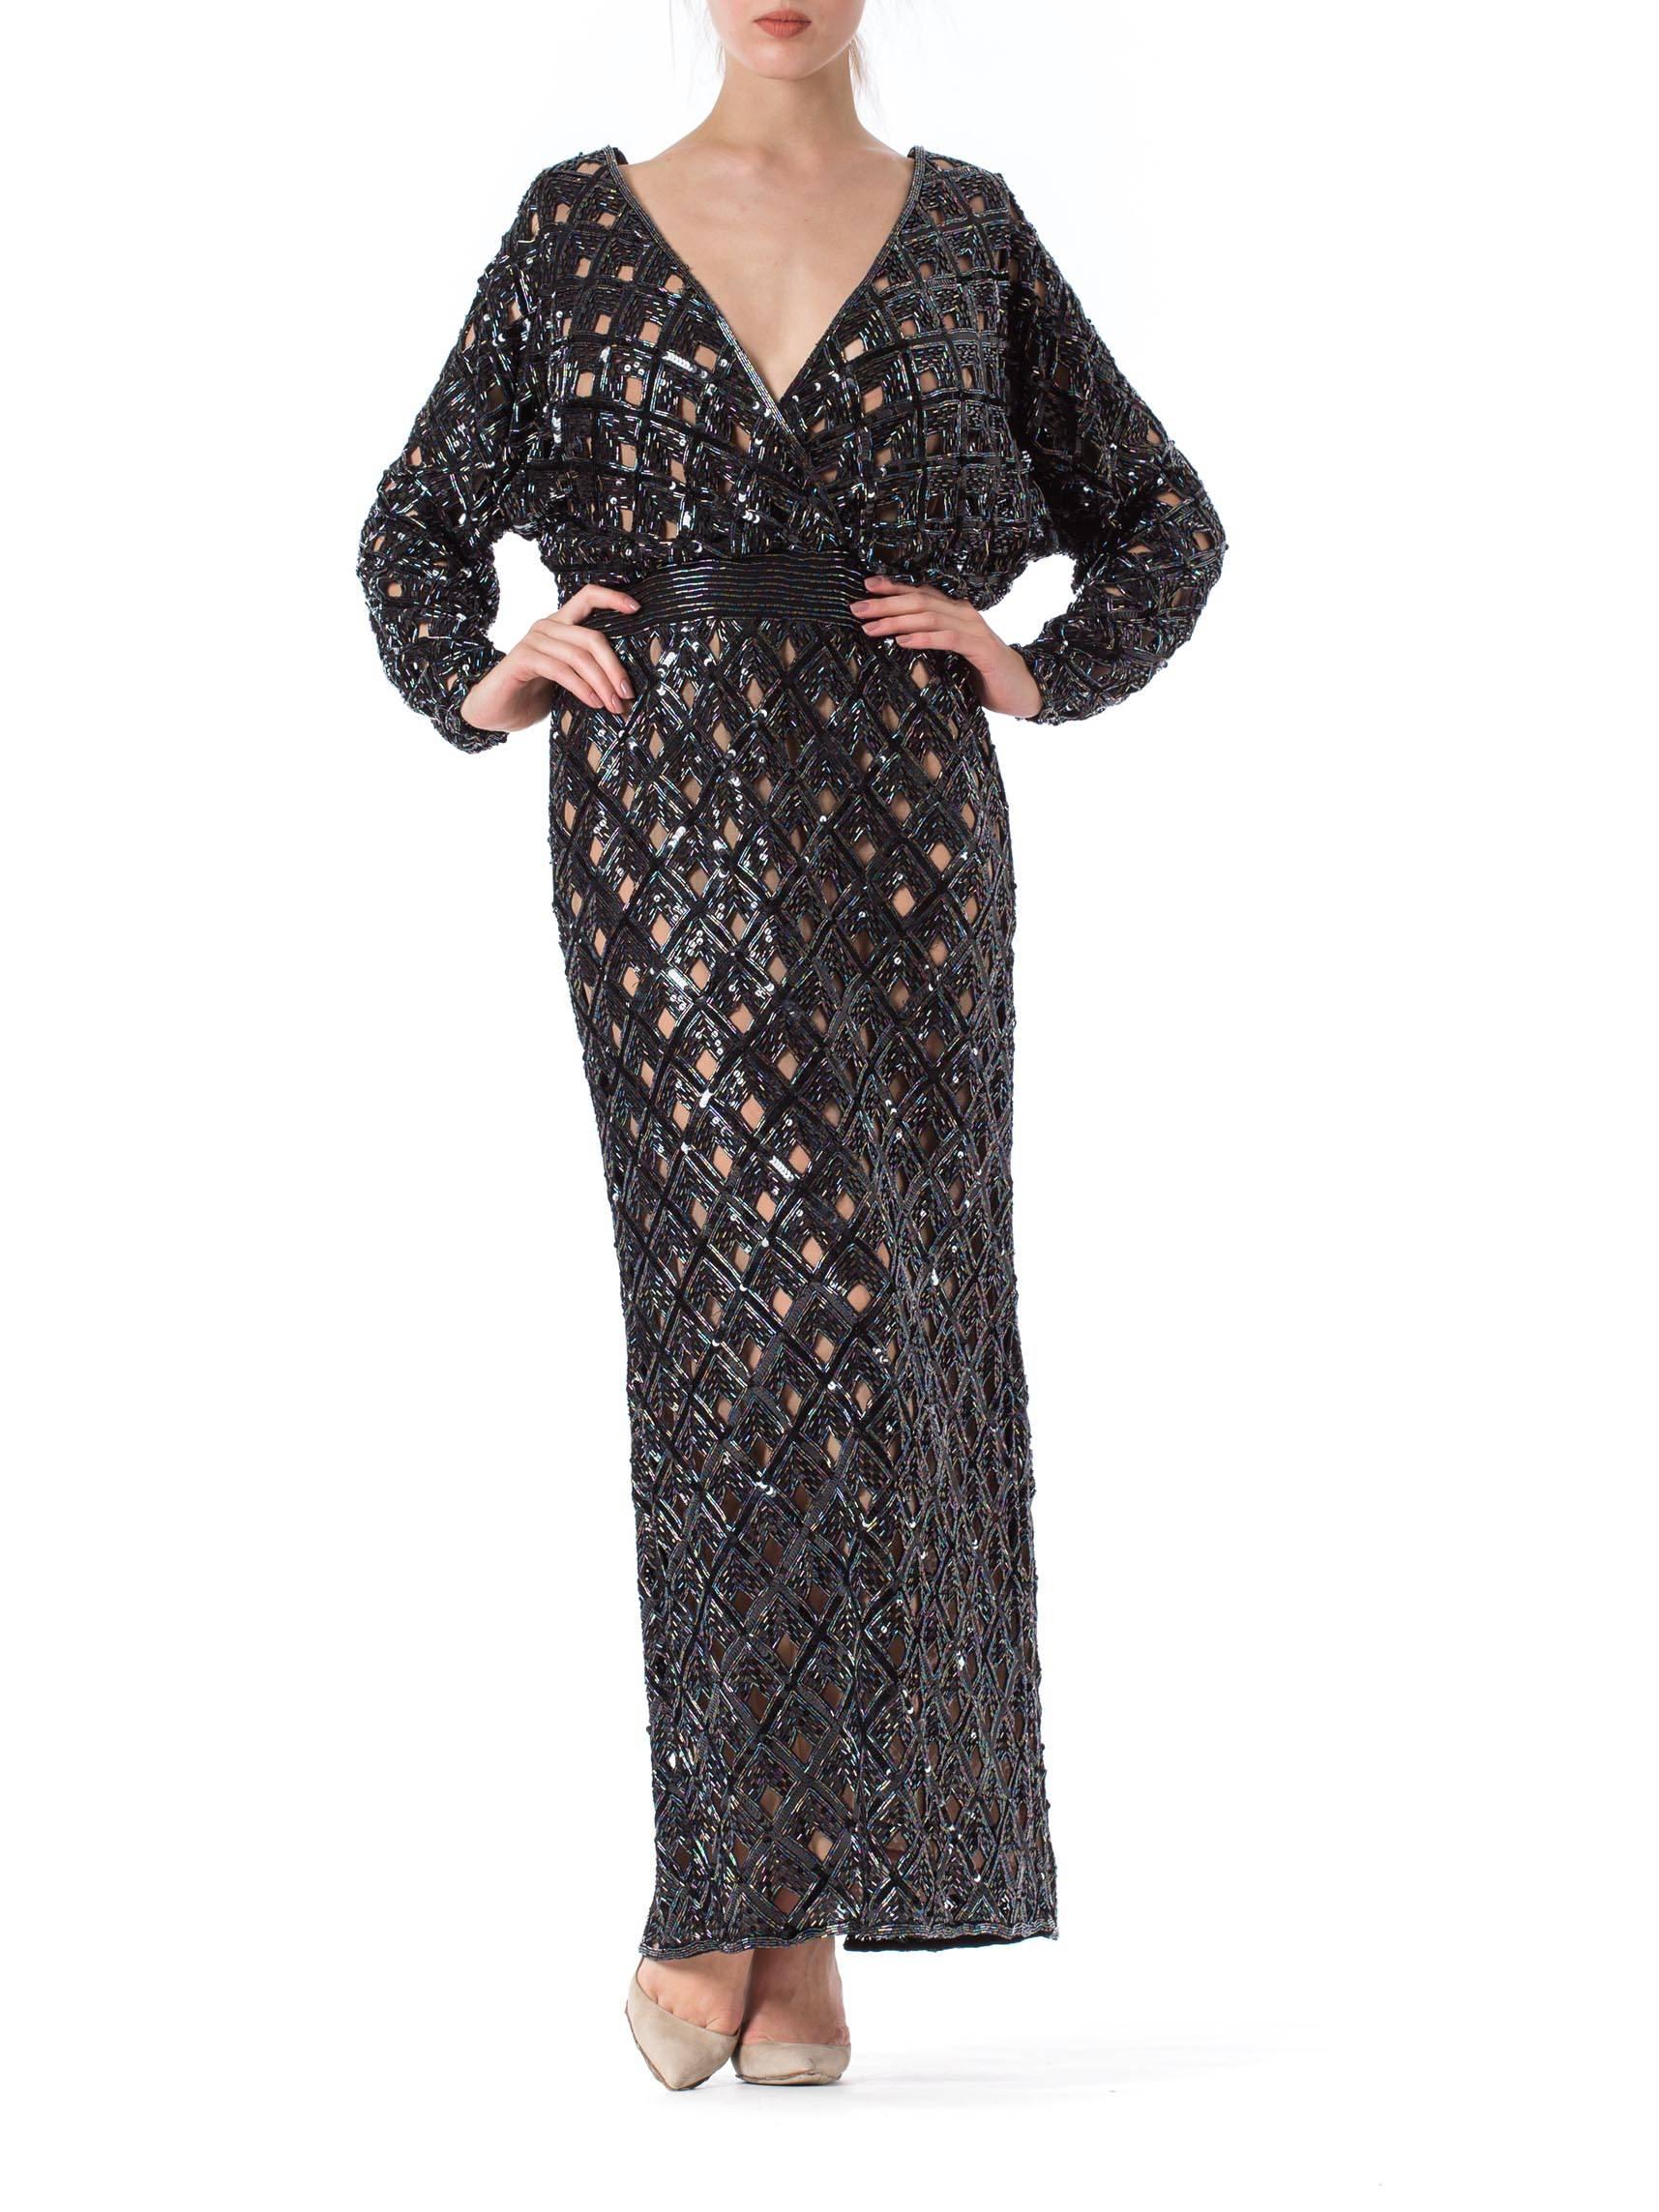 robe BOB MACKIE des années 1970, en soie perlée, avec découpes géométriques, dos nu et bas